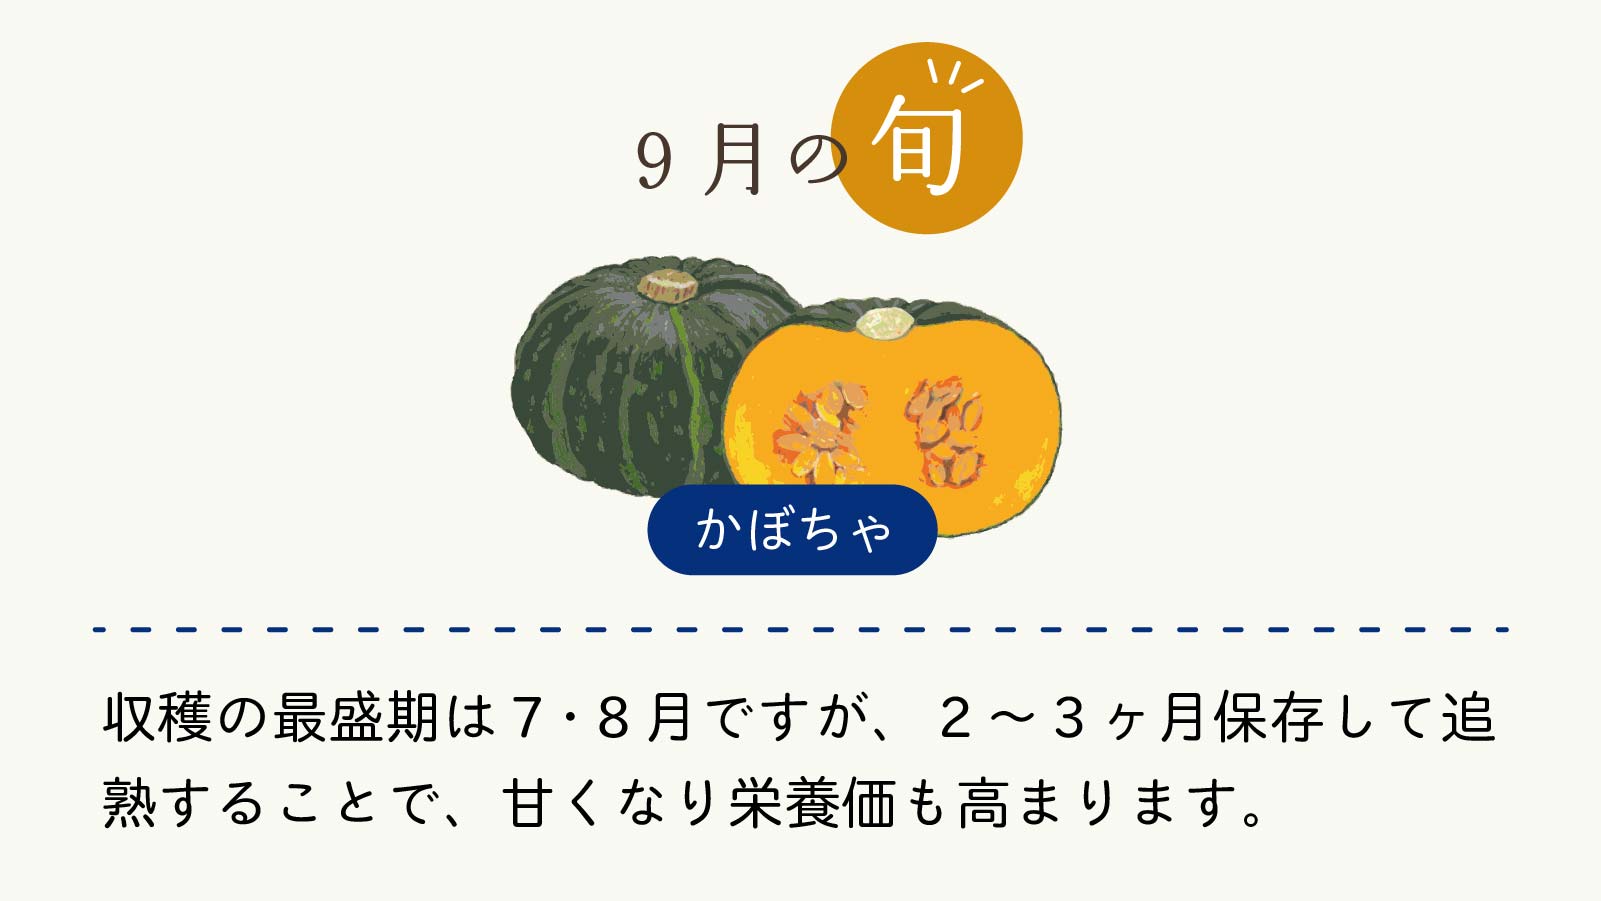 旬の食材から栄養を摂ろう Vol 2 かぼちゃ Pick Wp